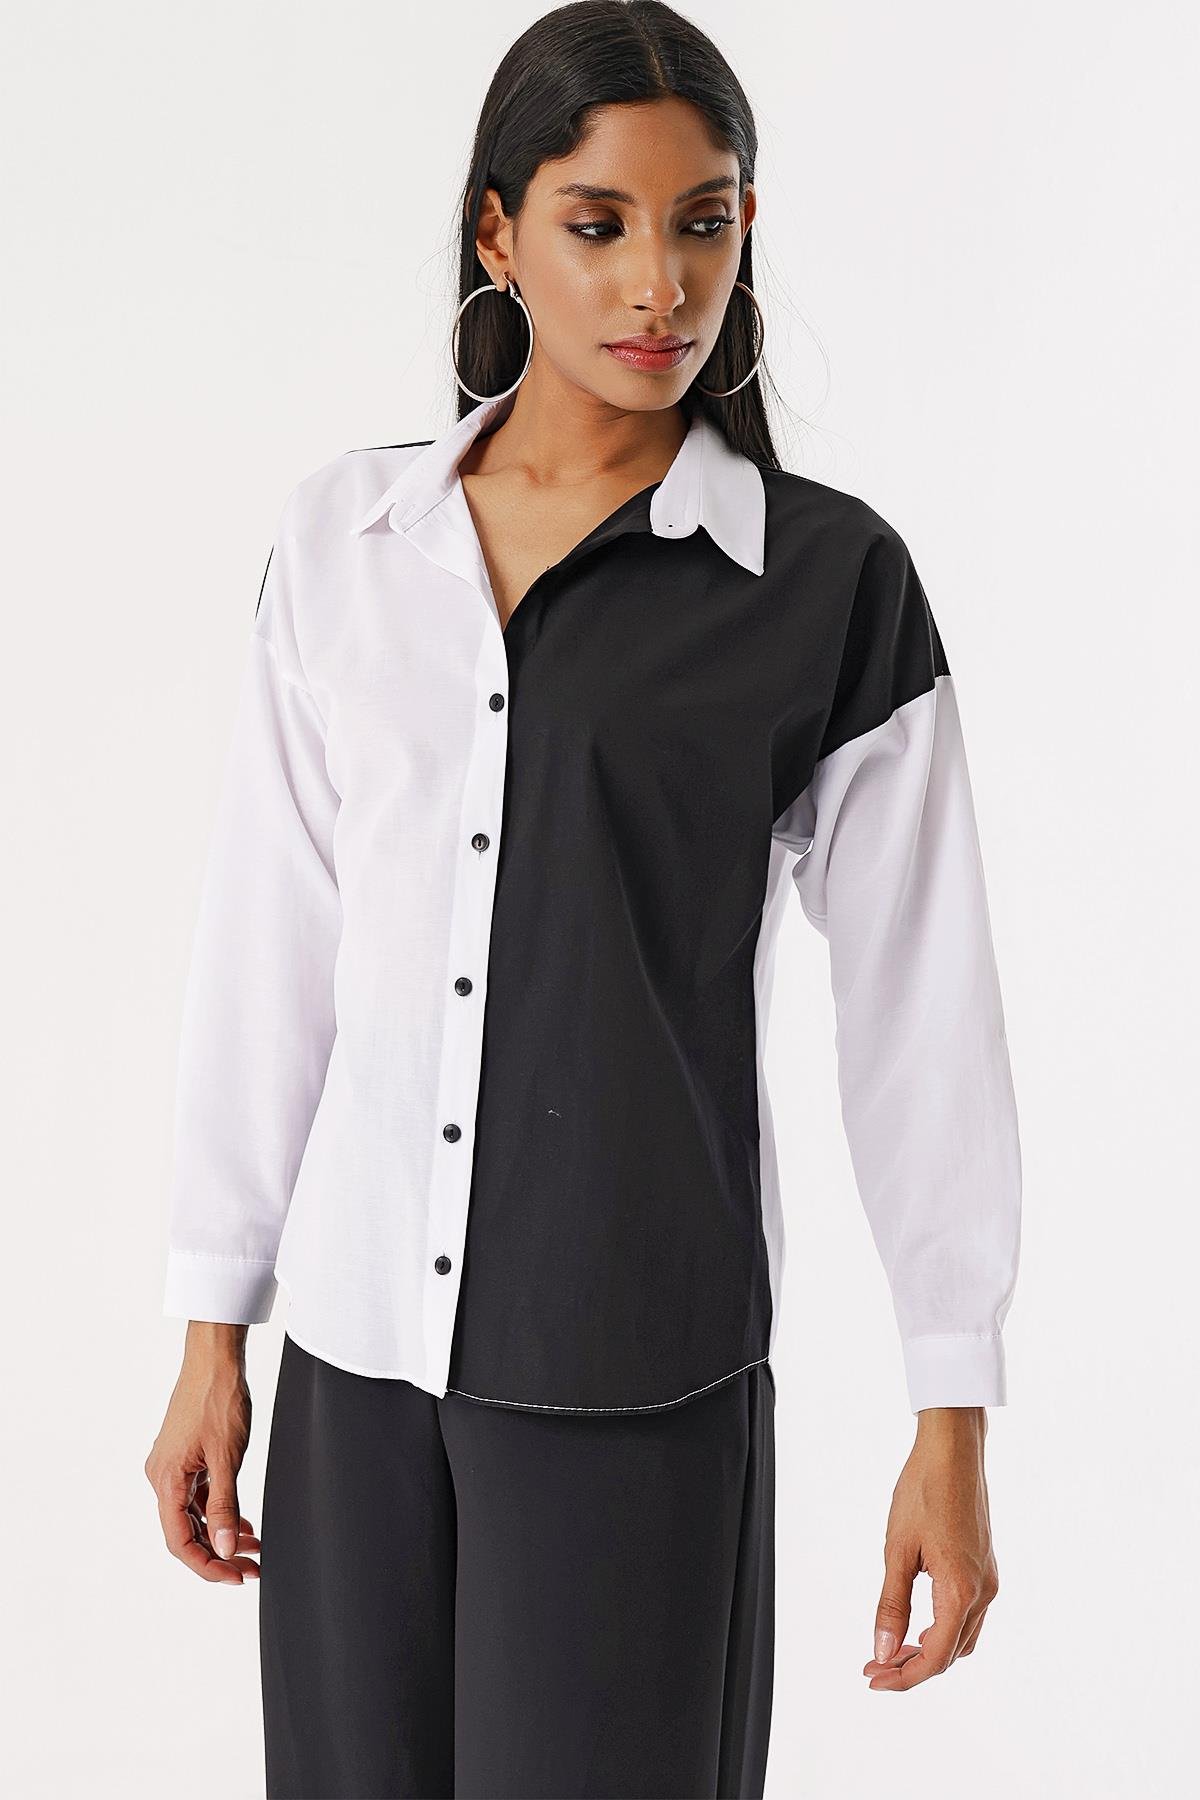 Kadın Beyaz Siyah Çift Renk Gömlek - Butik Buruç